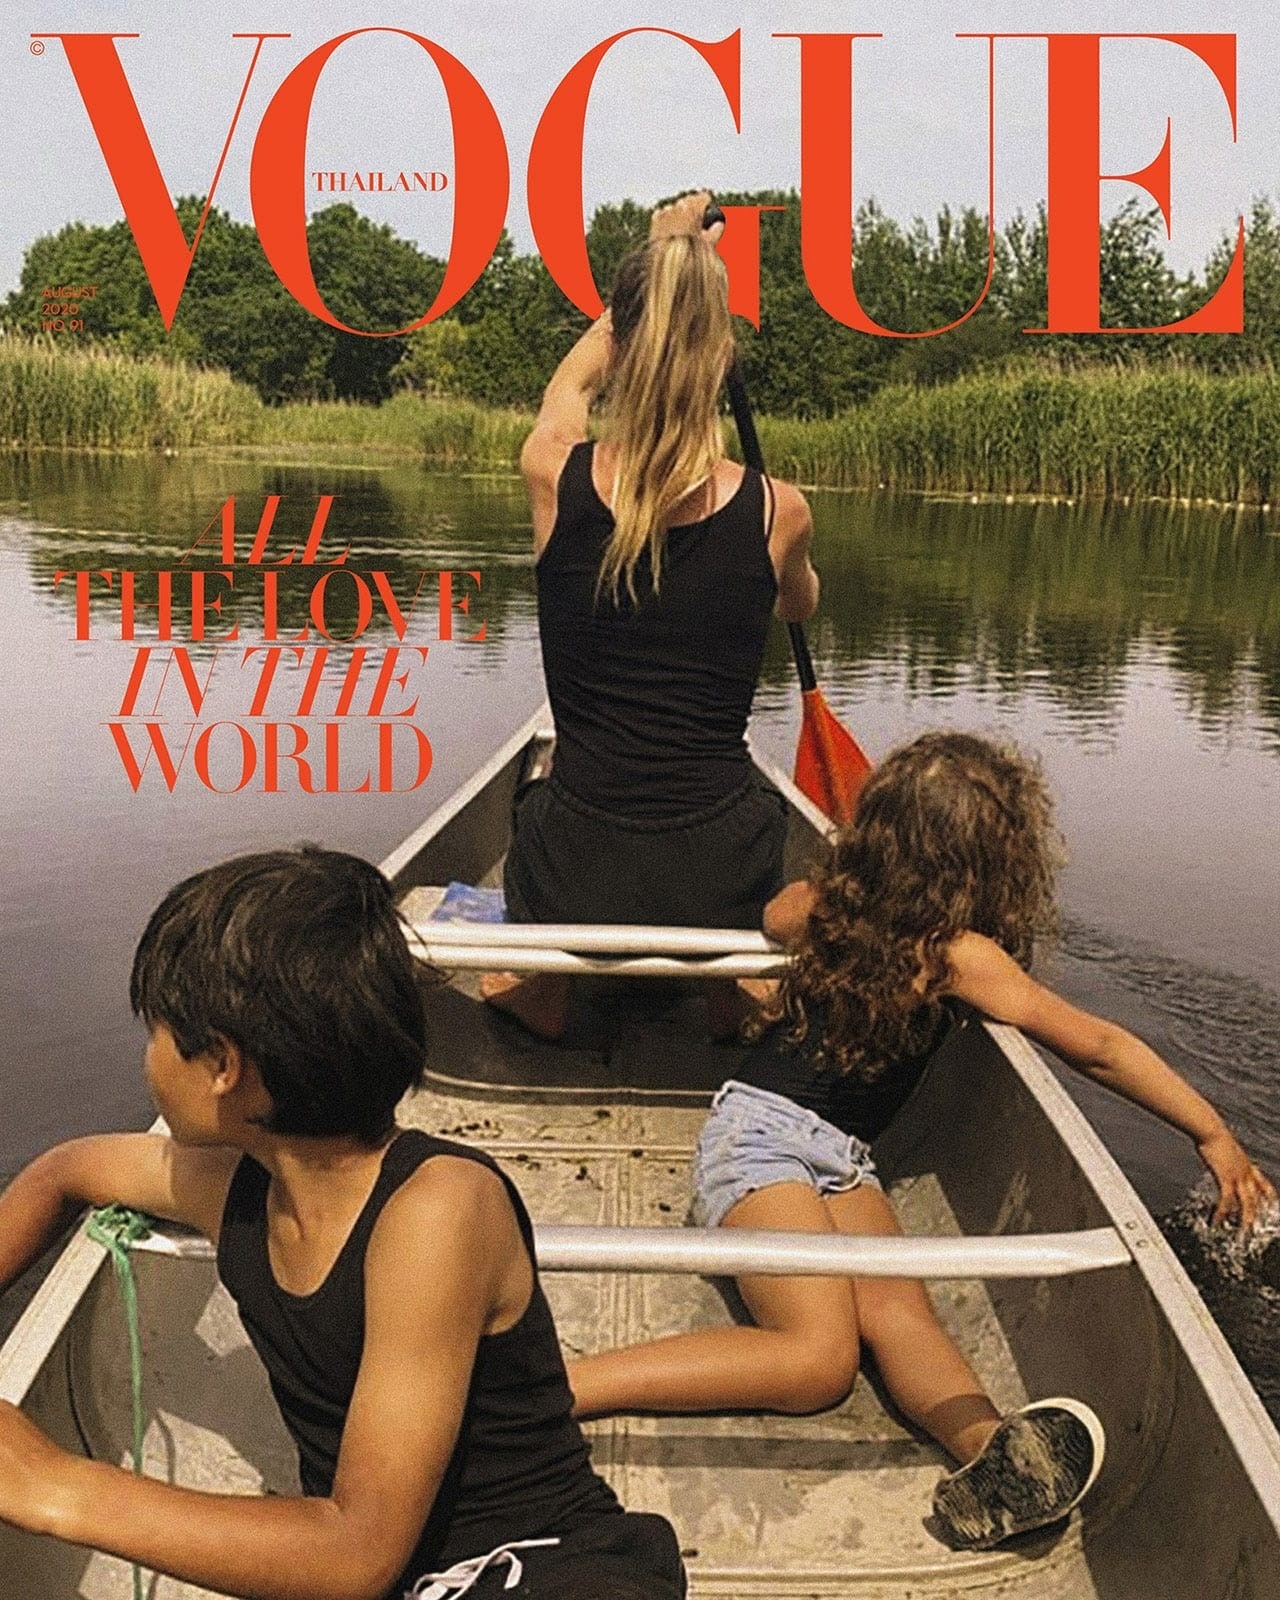 Vogue Thailand